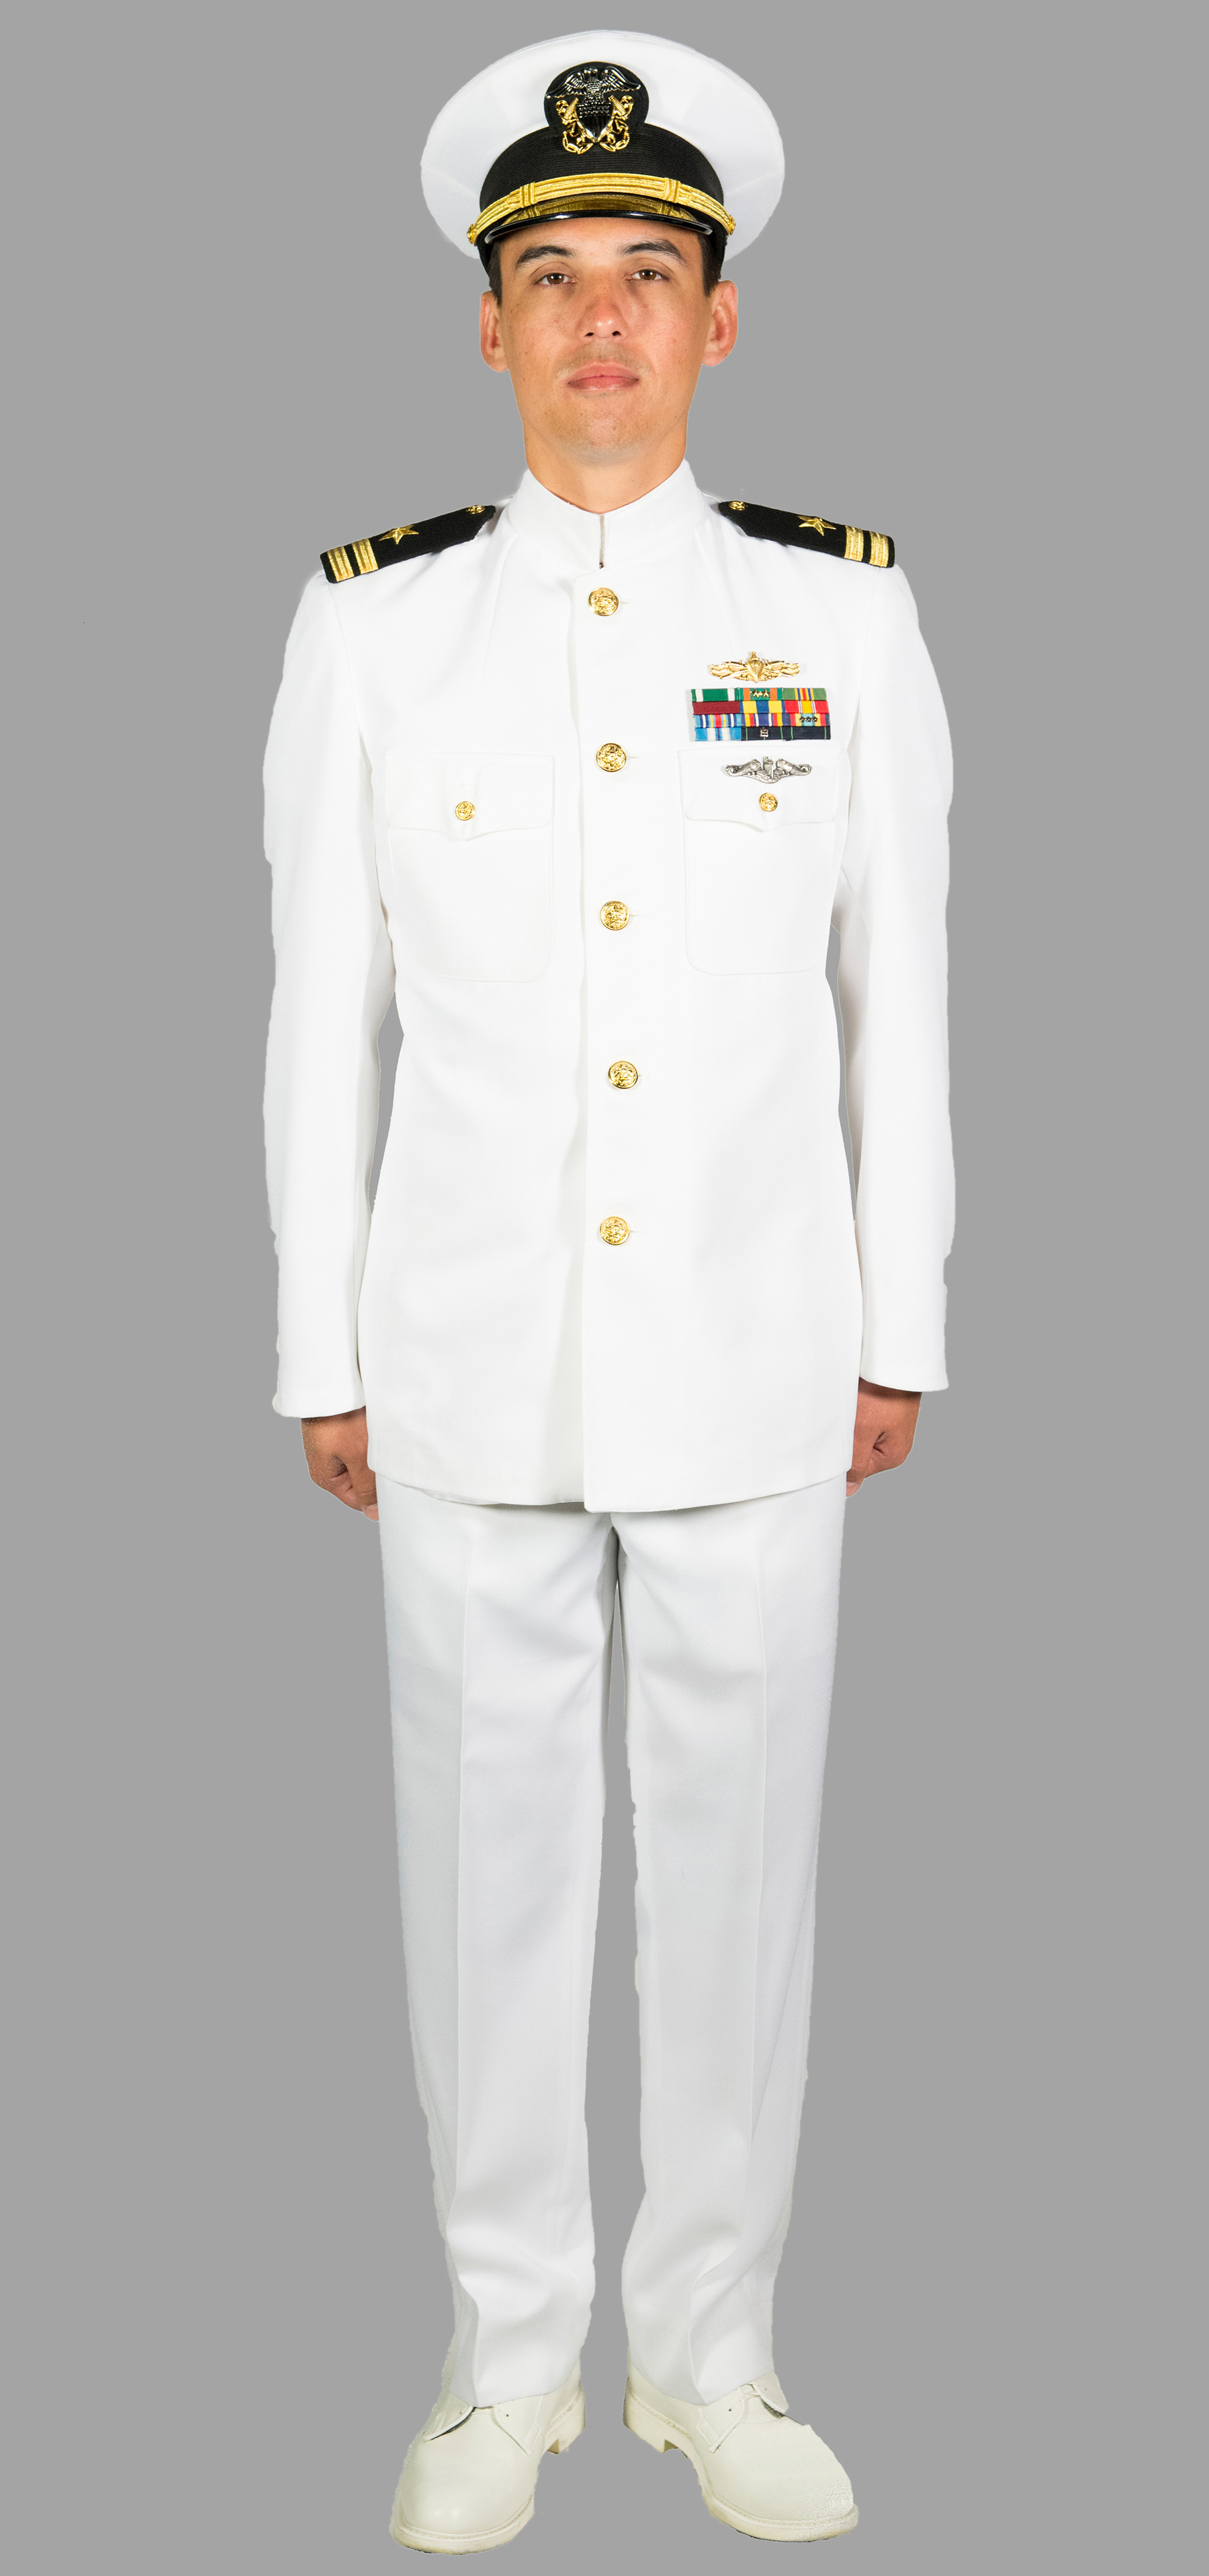 navy dress white uniform